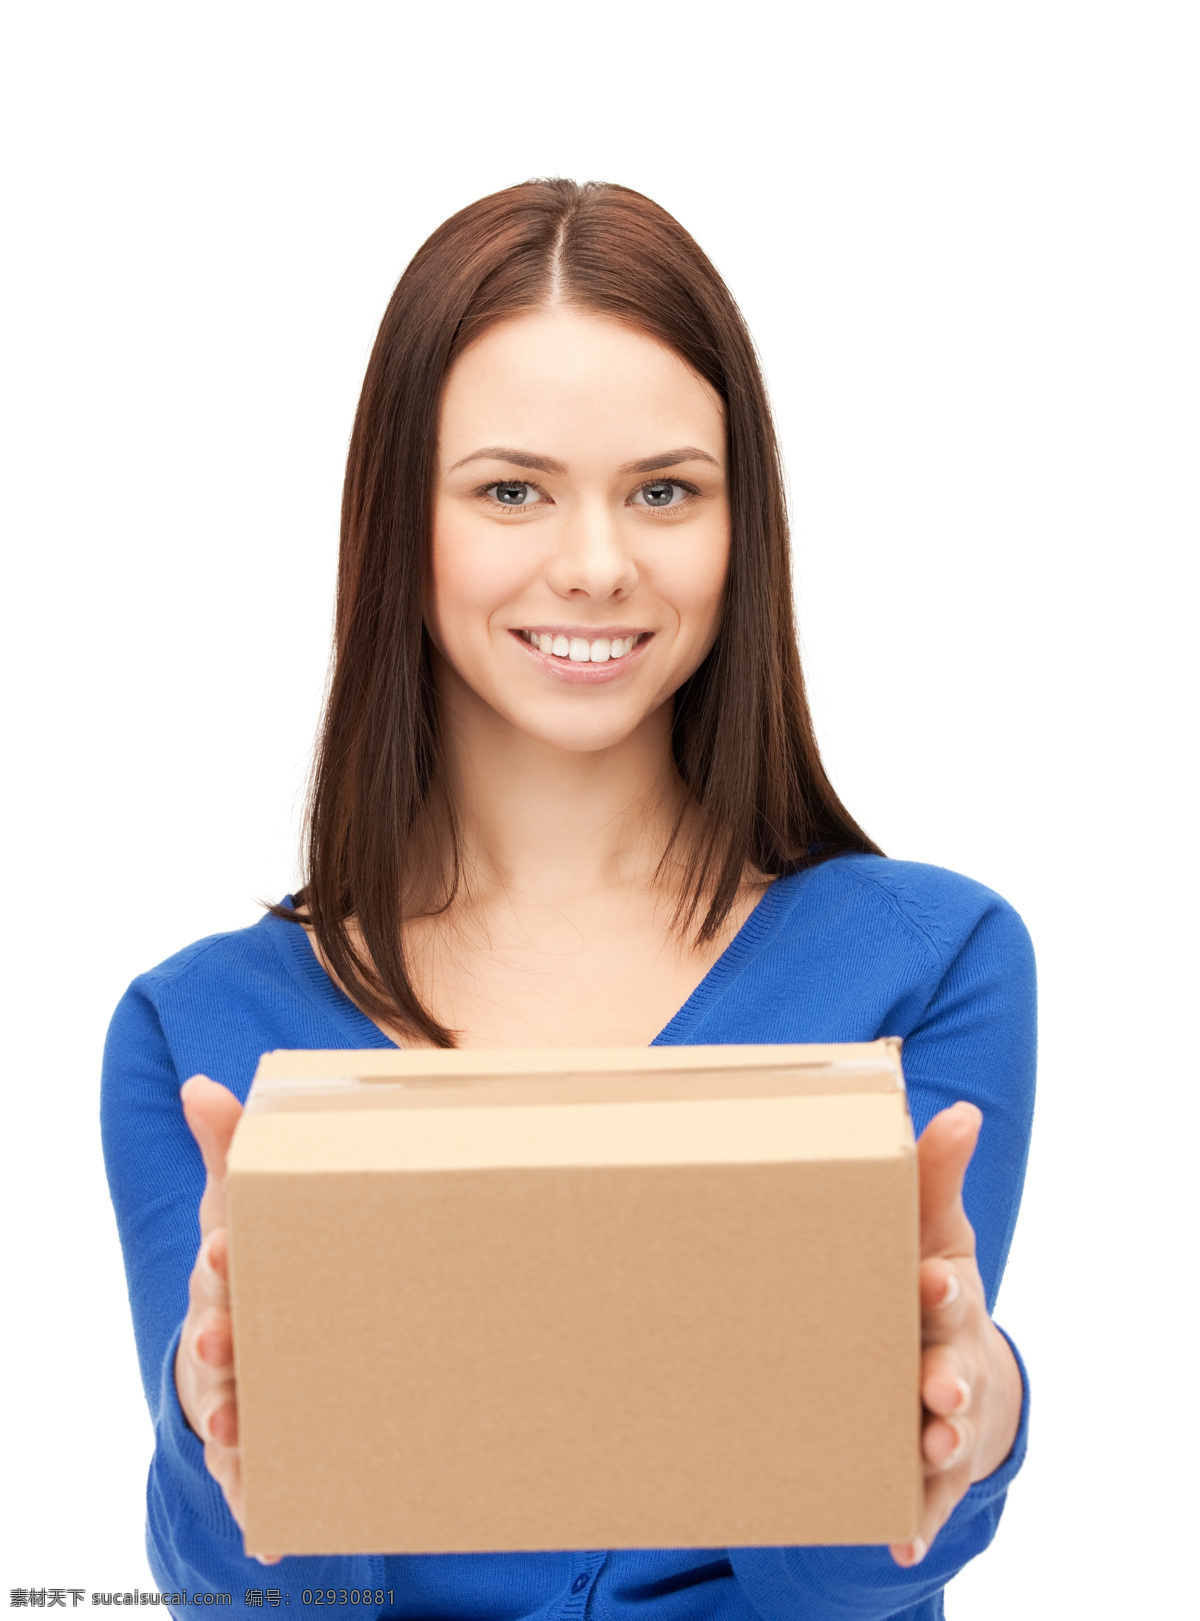 纸箱 外国 女人 外国女人 送货工 快递员 箱子 货物 人物摄影 交通工具 其他类别 生活百科